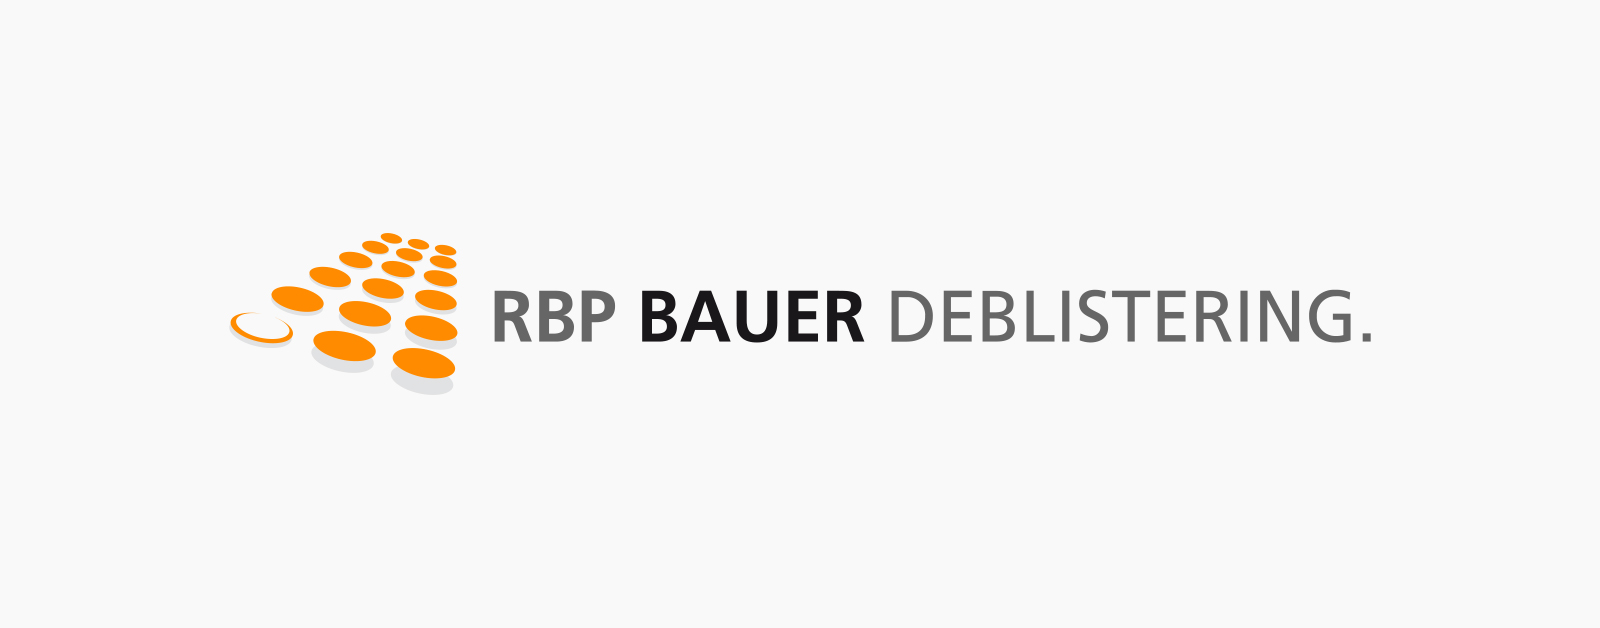 RBP Bauer Deblistering